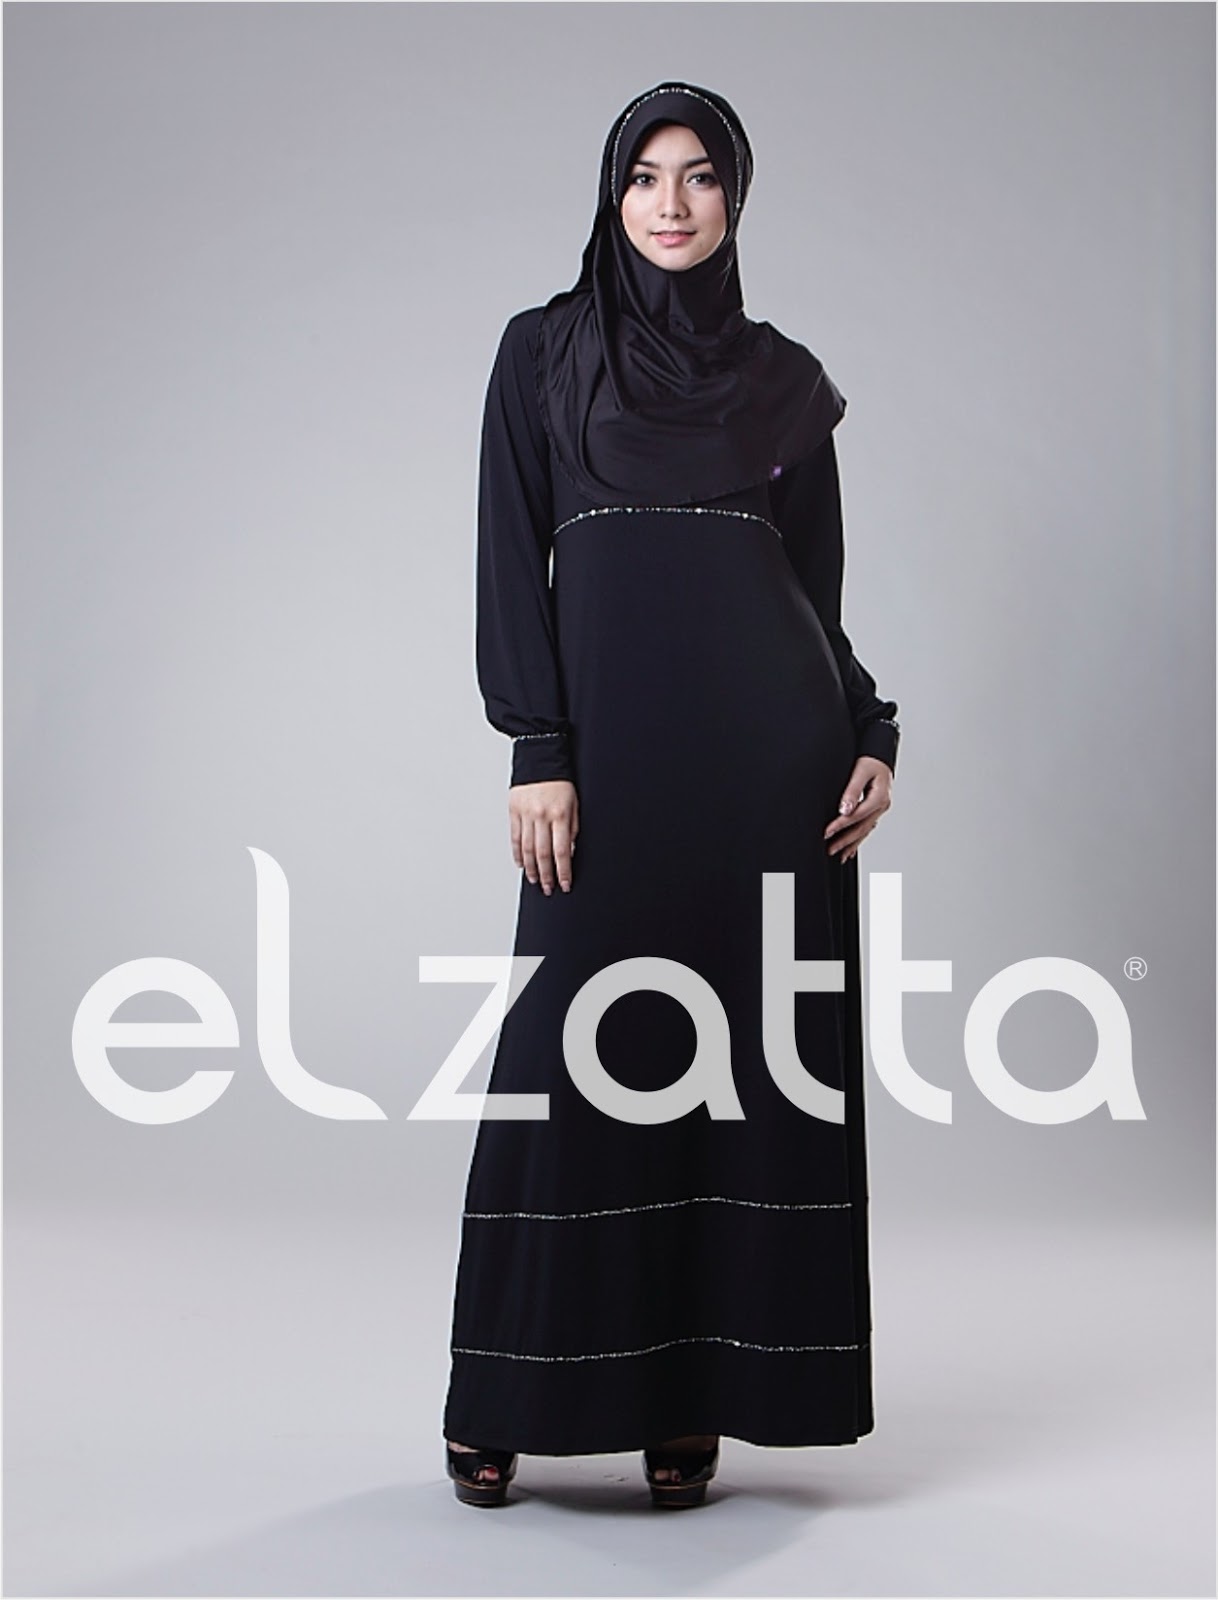 15 Gamis Elzatta  Terbaru 2021 Desain Elegan Jilbab Cantik